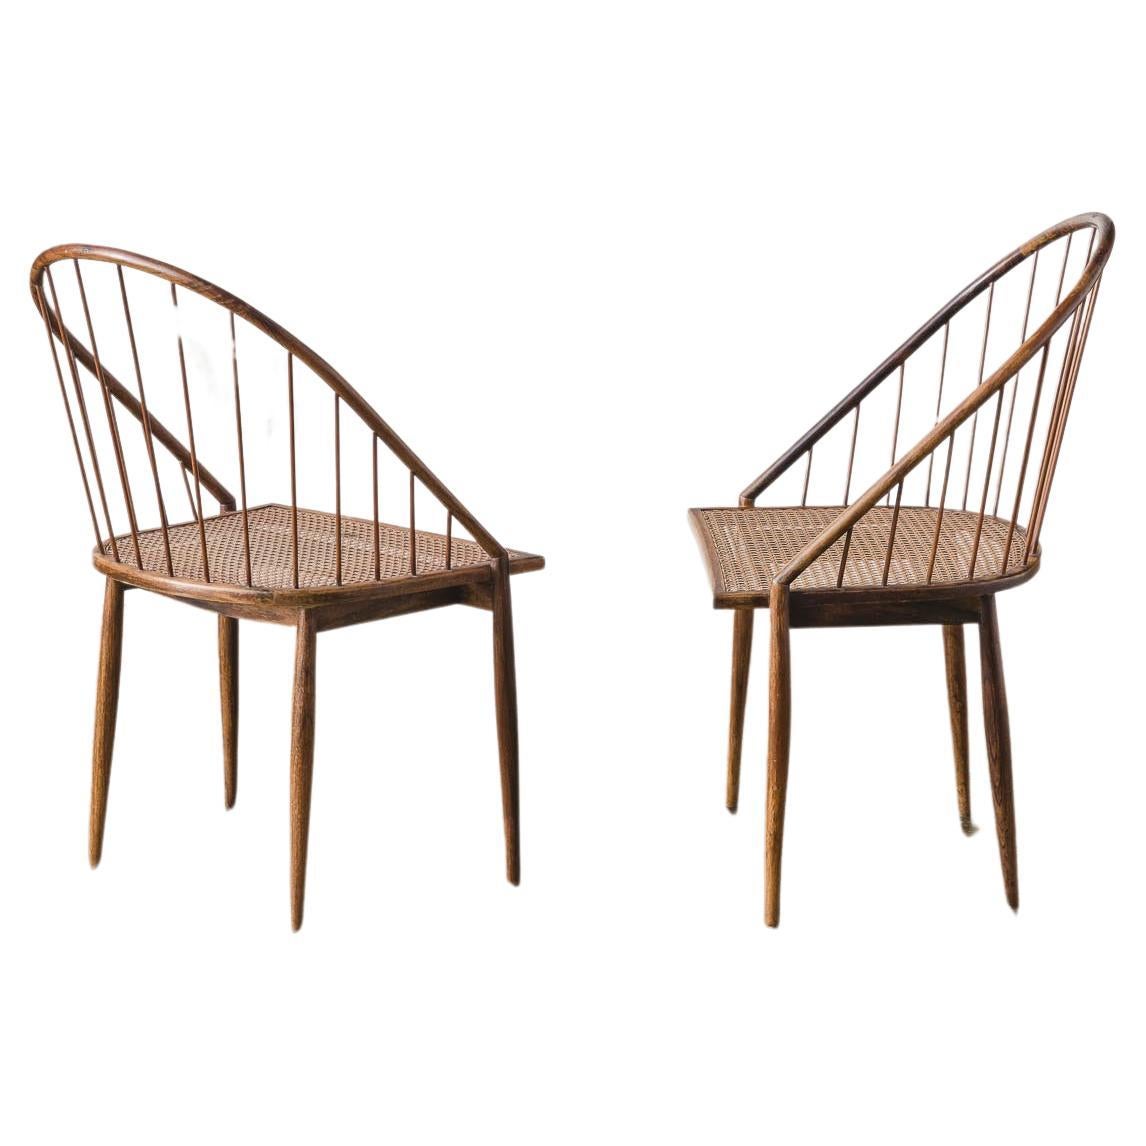 Rara pareja de sillas "Curva" de Joaquim Tenreiro